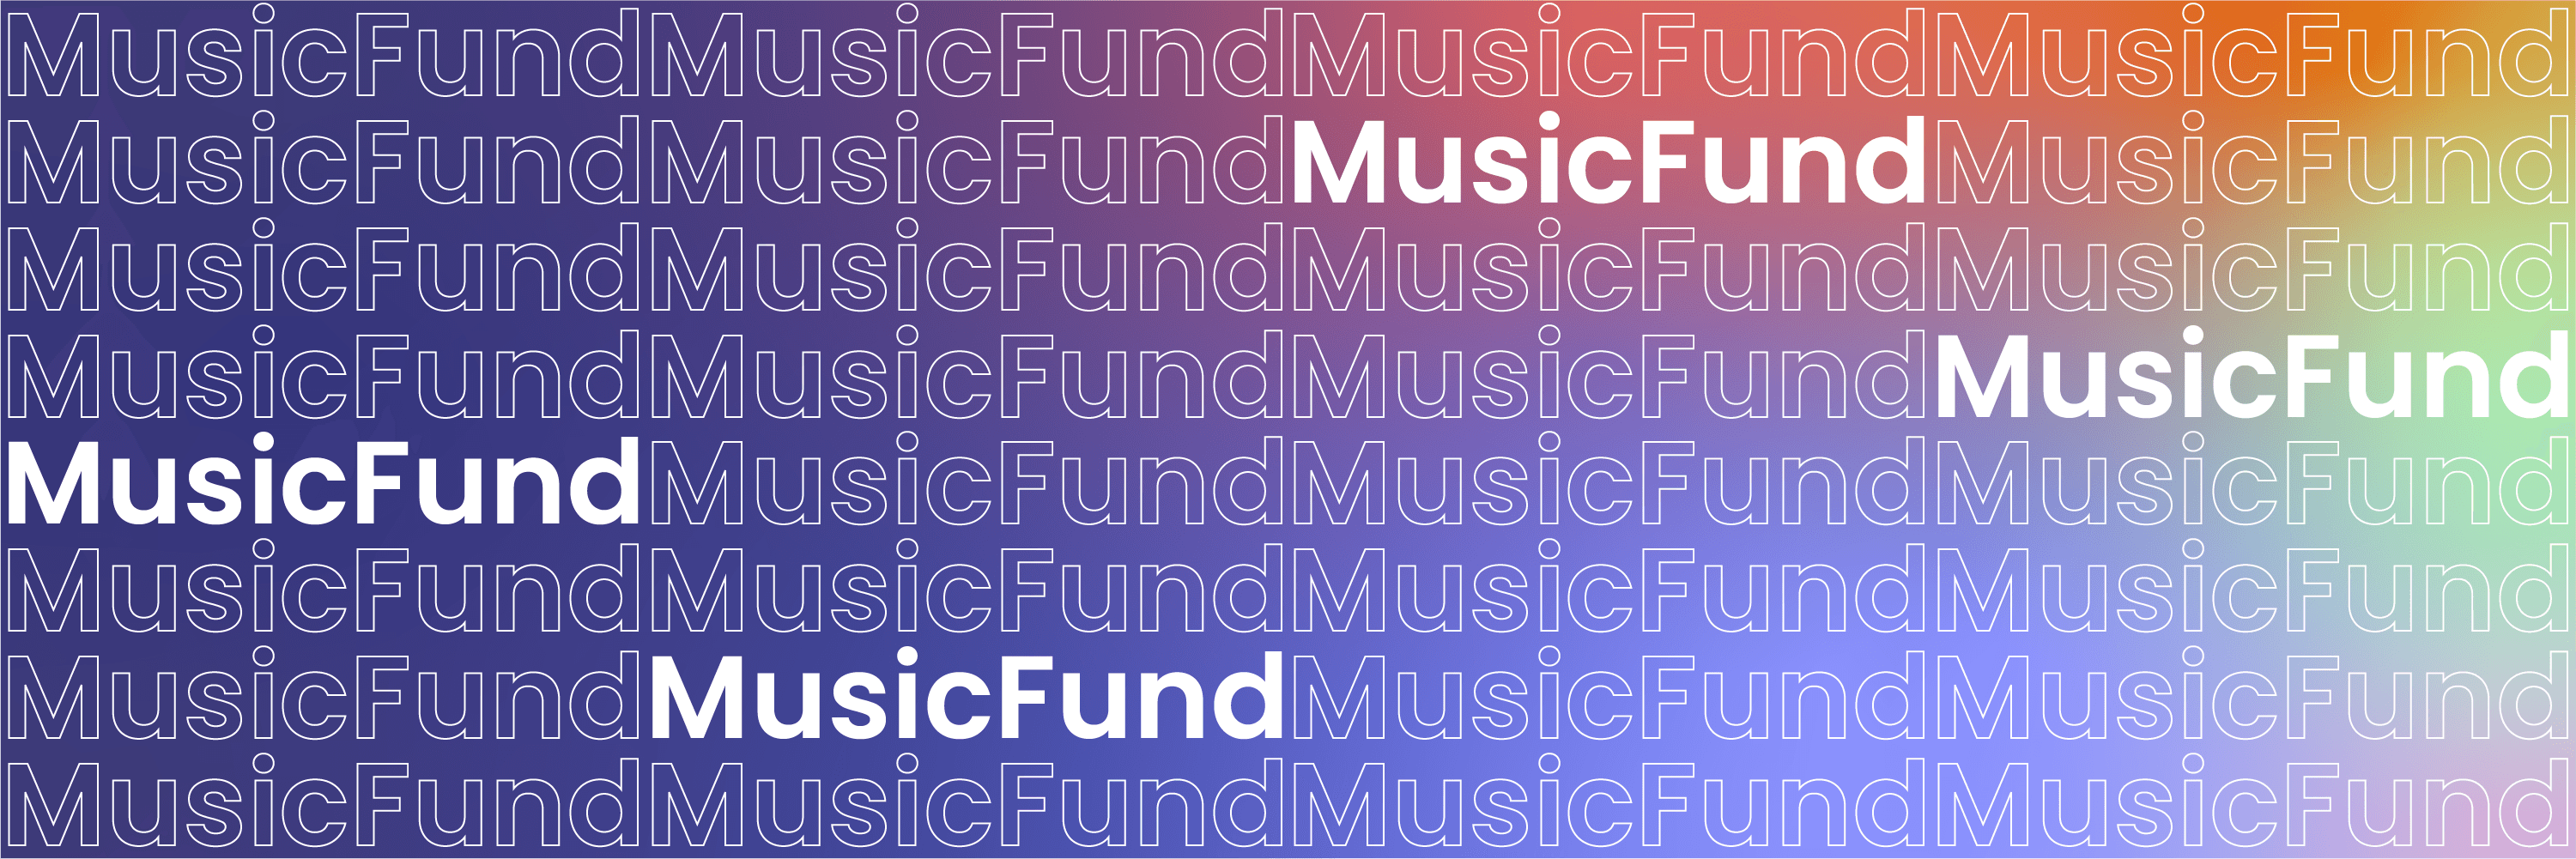 MusicFund Banner